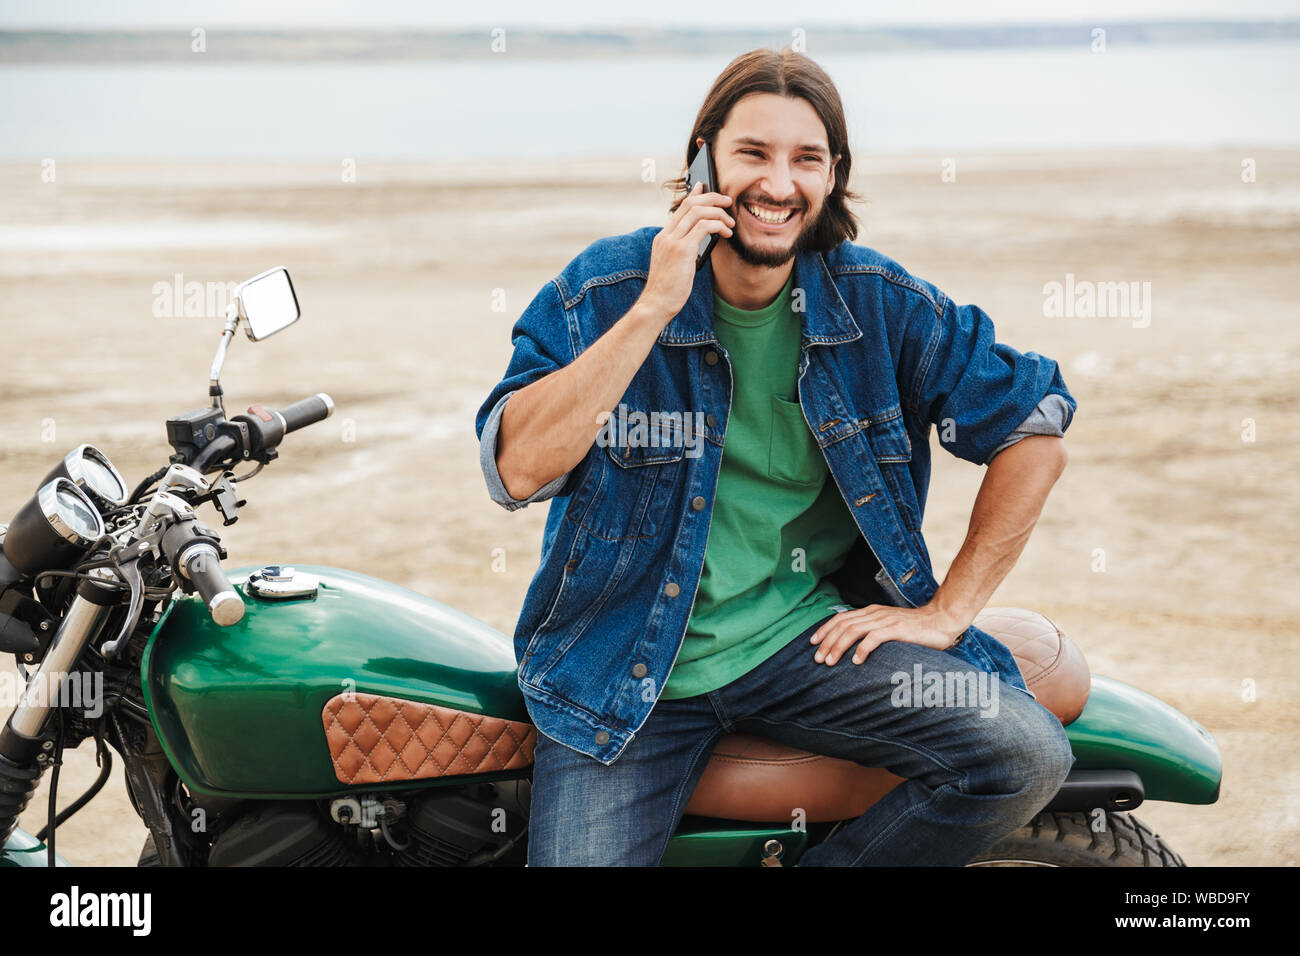 Beau jeune homme portant tenue décontractée assis sur une moto à la plage, talking on mobile phone Banque D'Images